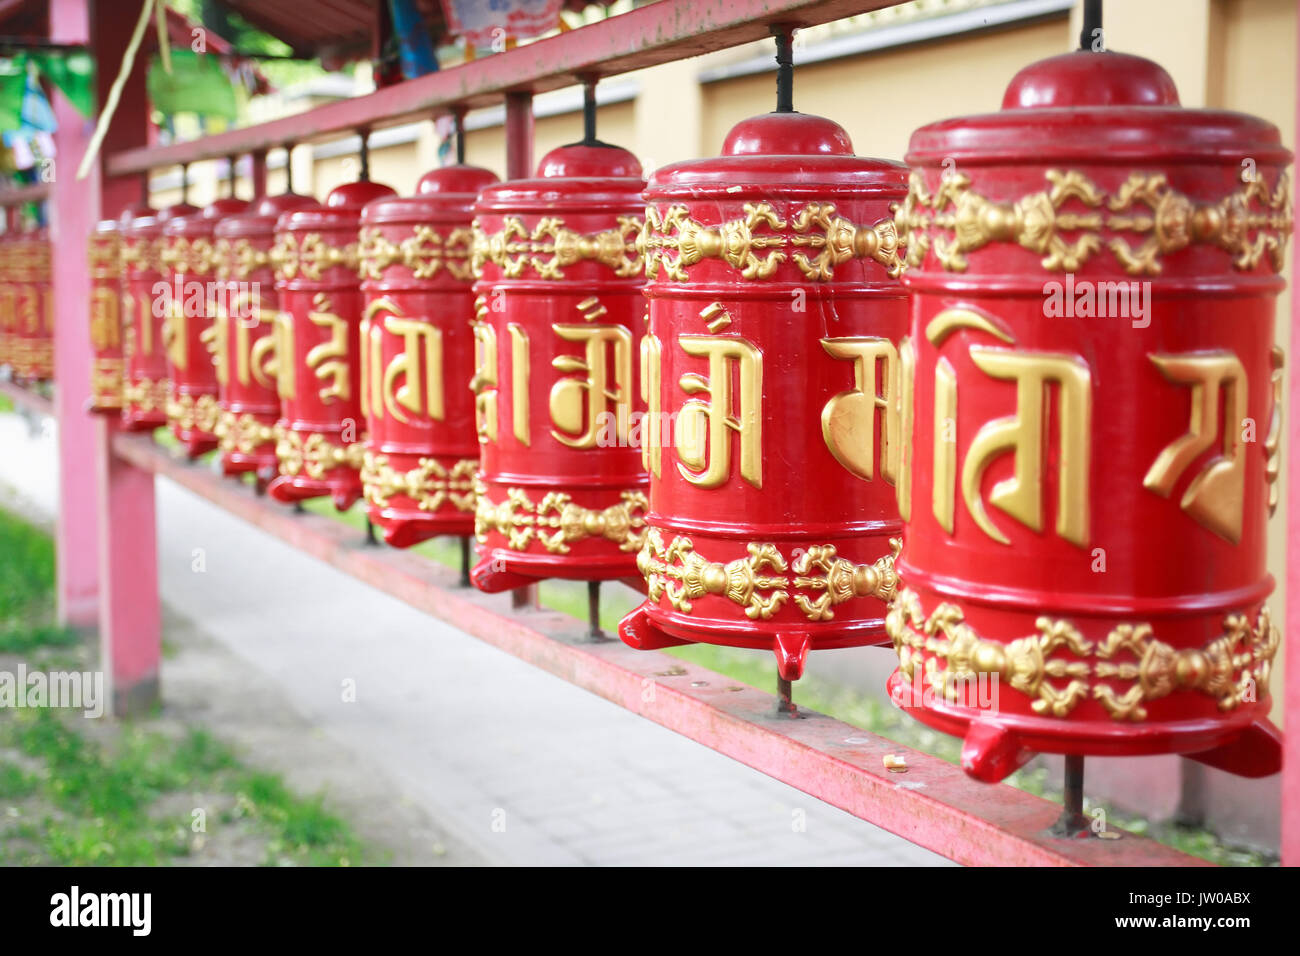 Dettaglio di un Lamaism Datsan tempio con red tamburi in una riga Foto Stock